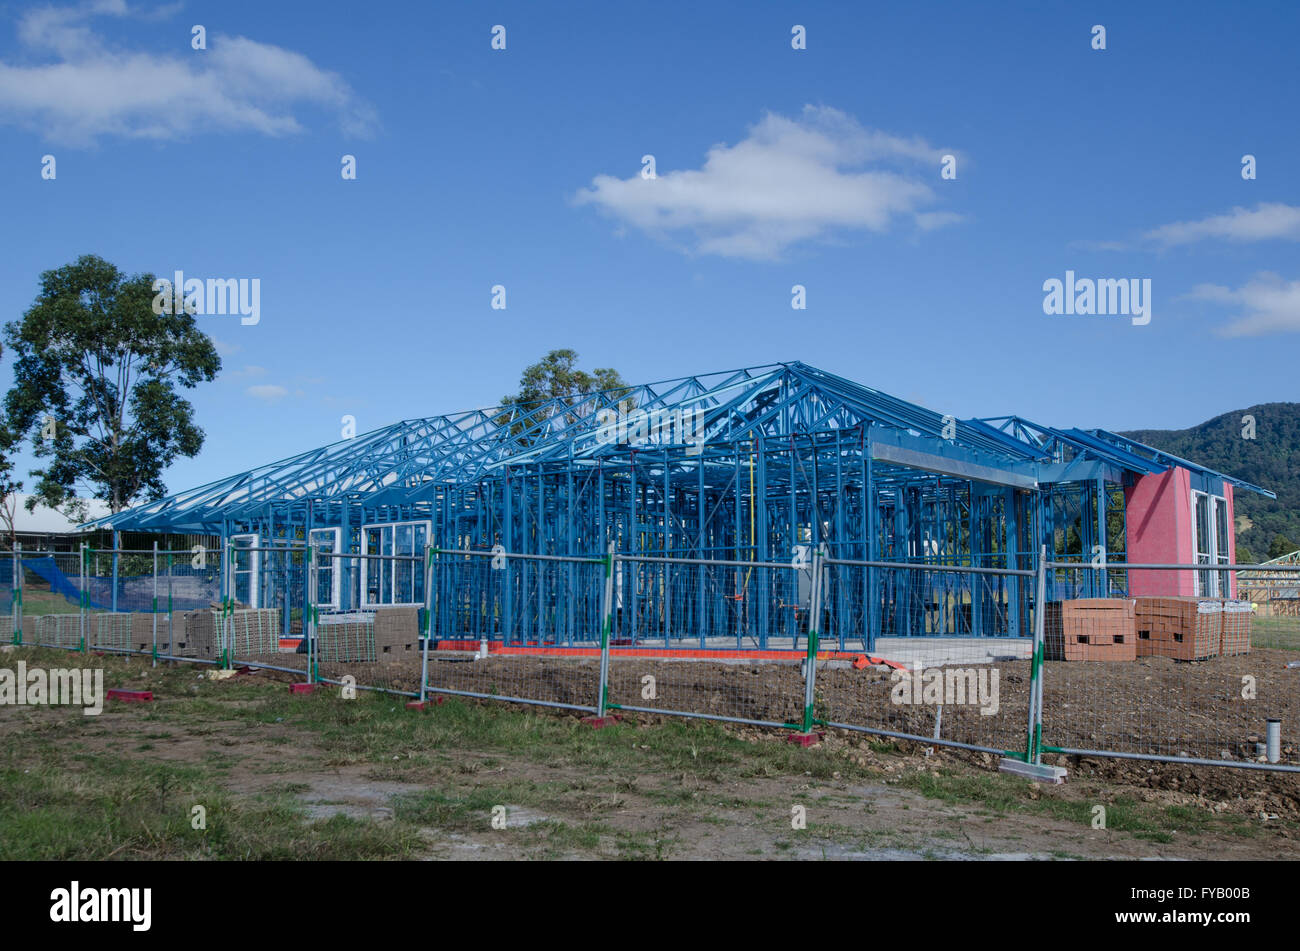 La construction de nouvelles maisons en Australie Banque D'Images